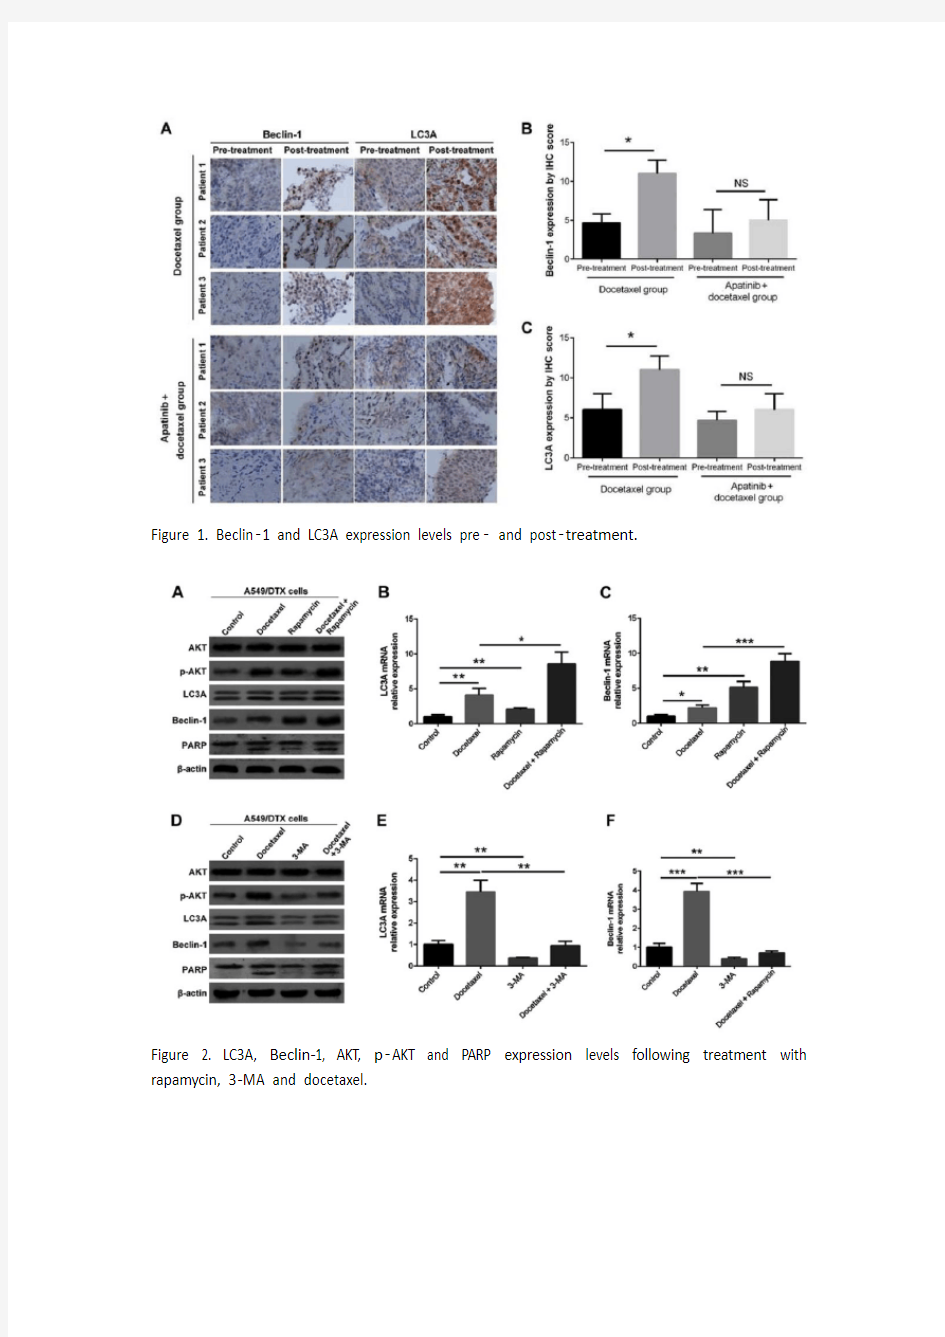 阿帕替尼通过调节自噬作用使化学耐药的NSCLC细胞对多西他赛敏感